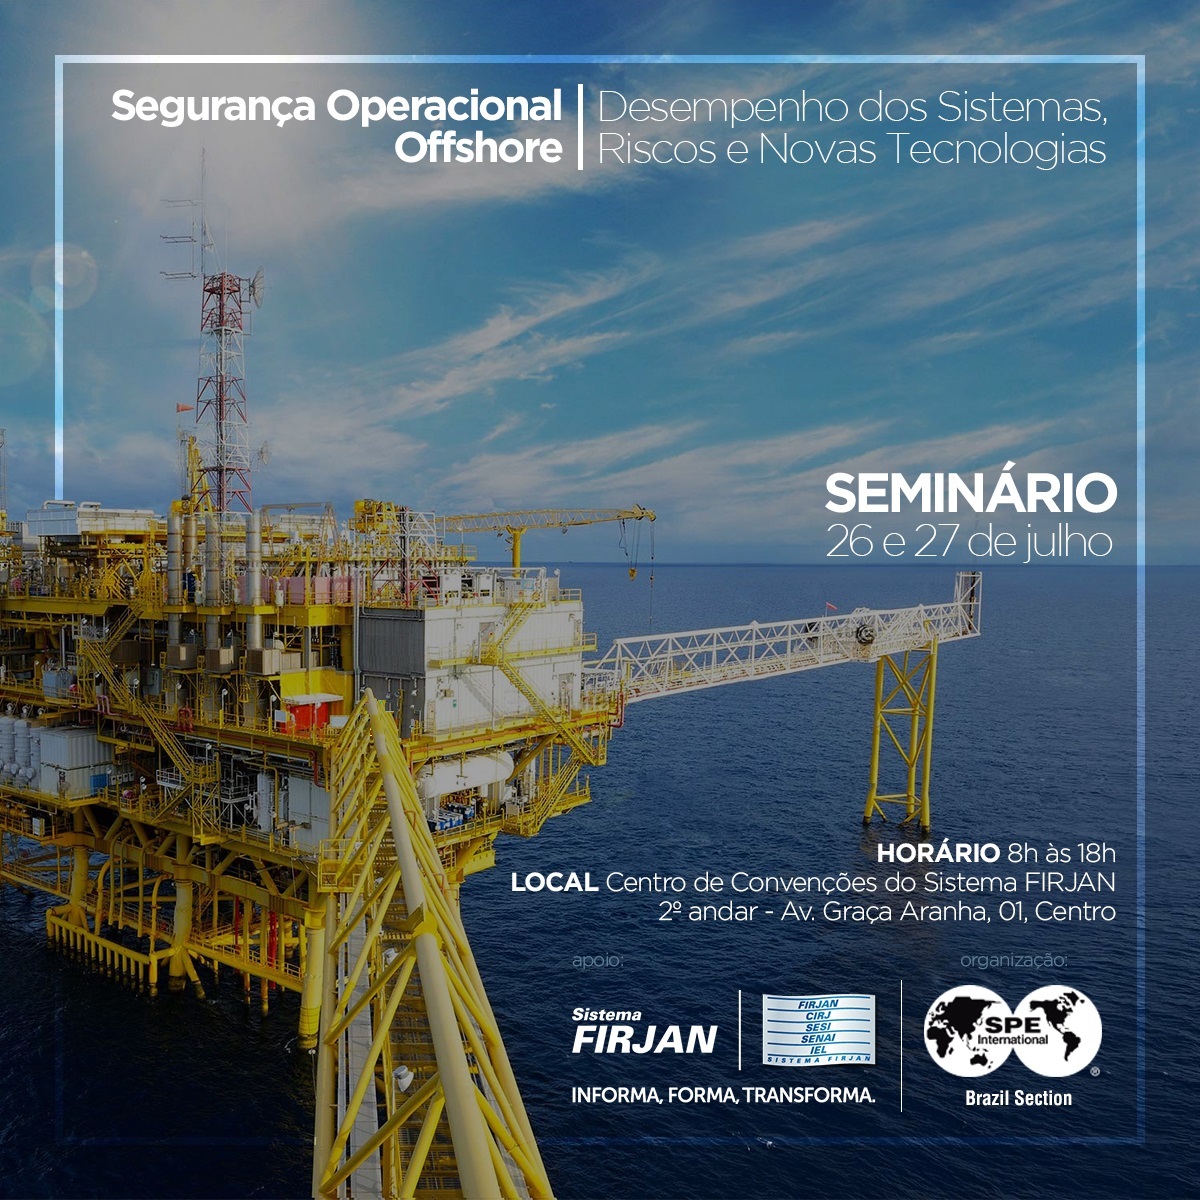 Seminário Segurança Operacional Offshore: Desempenho dos Sistemas, Riscos e Novas Tecnologias.